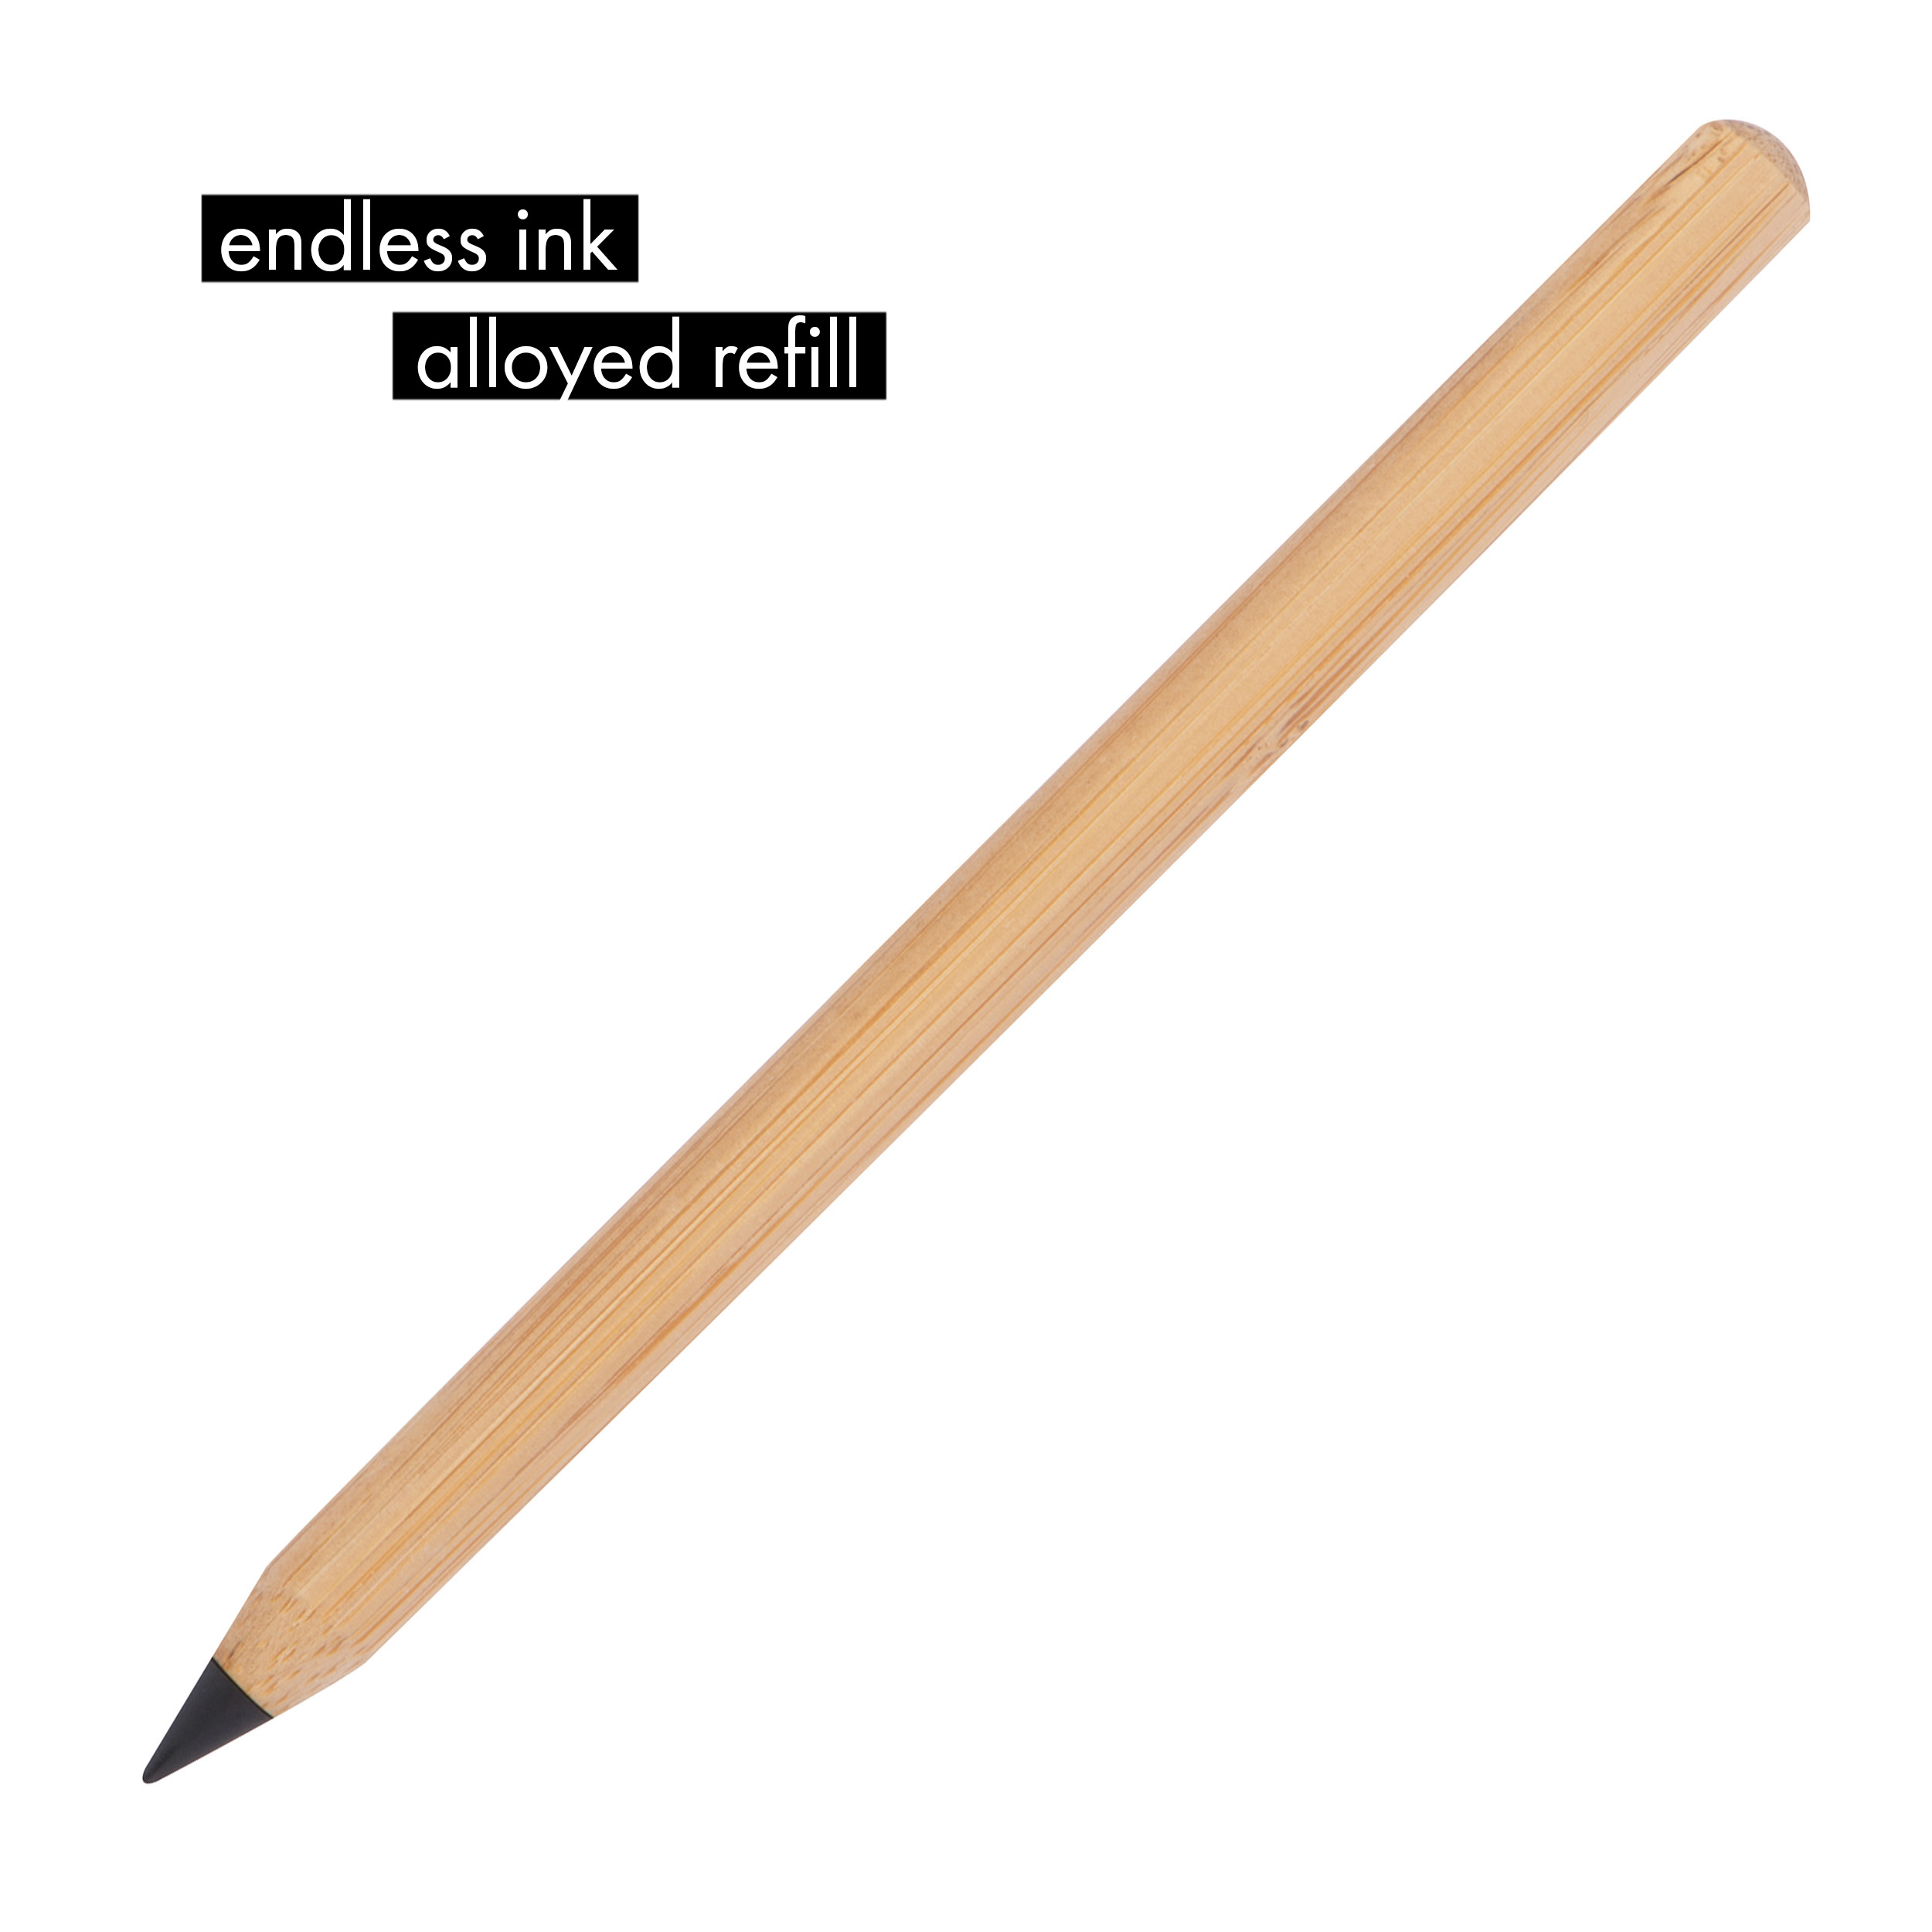 Inkless pen